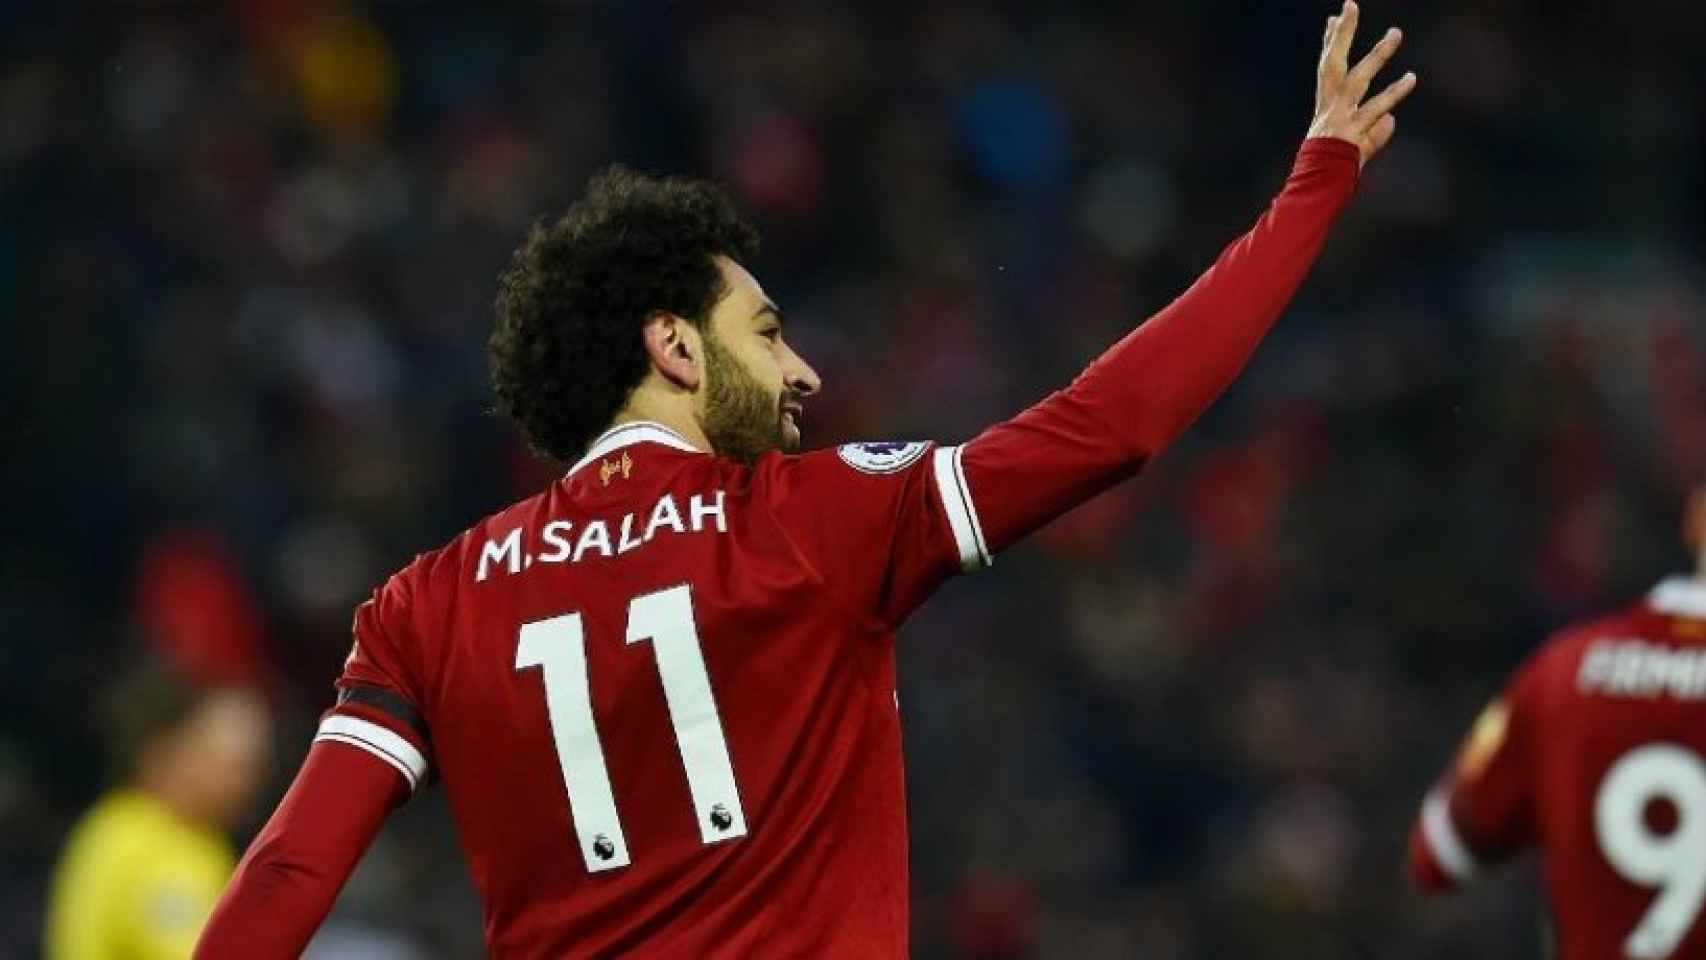 Salah celebra un gol con el Liverpool. Foto: liverpoolfc.com